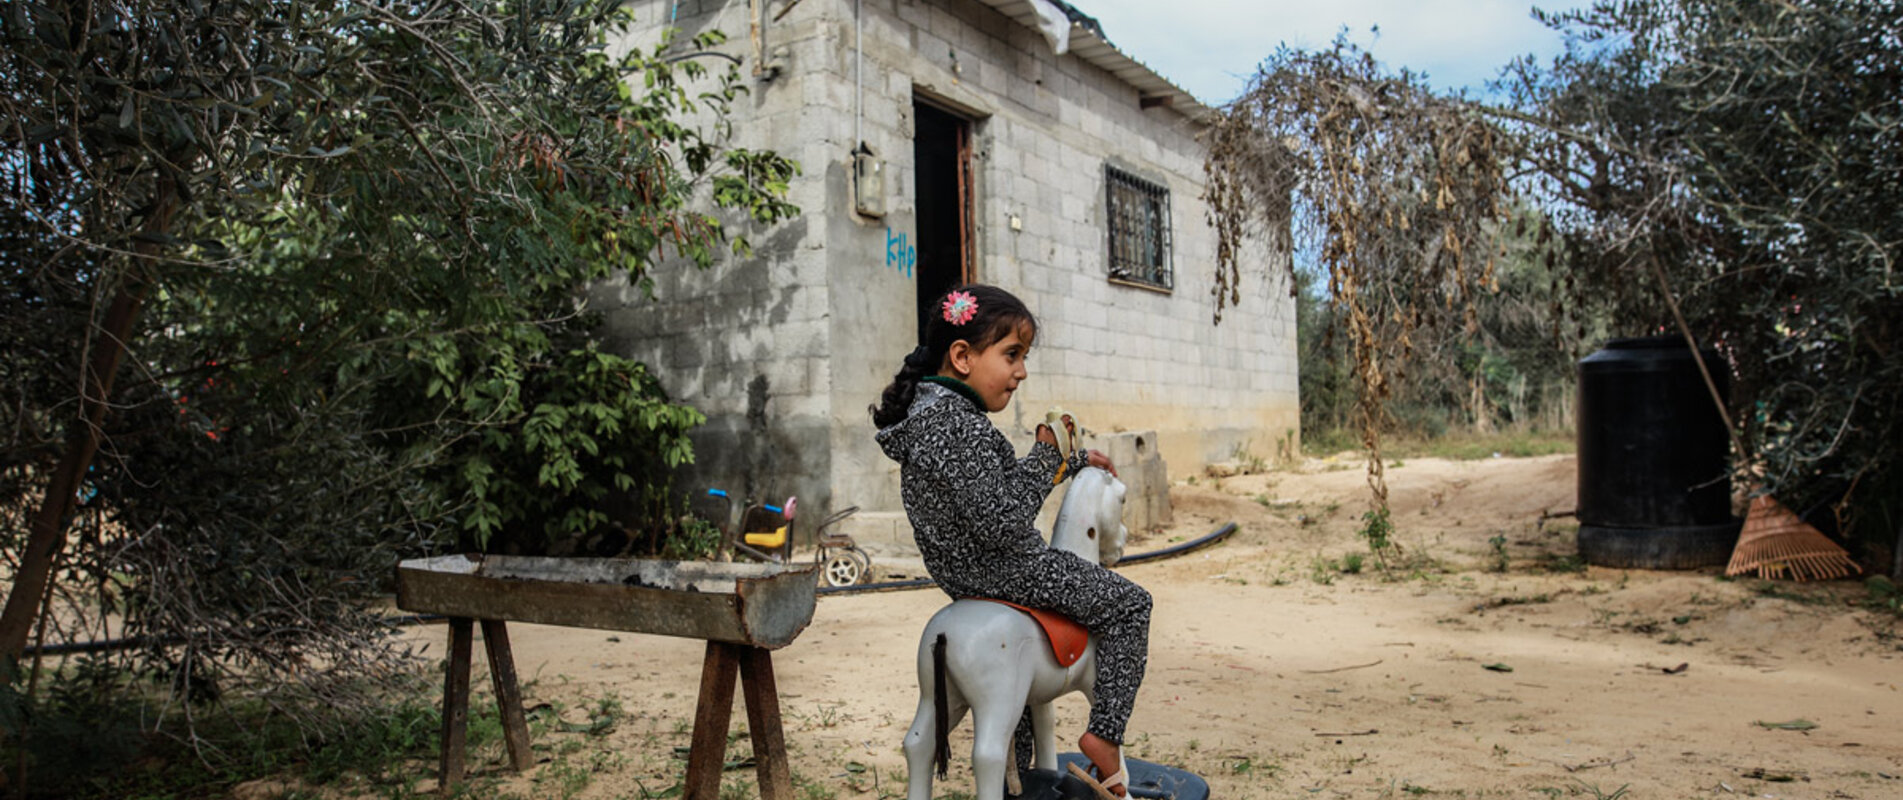 לין אבו הג׳רס בת הארבע משחקת בחזית ביתה בח׳אן יונס, ברצועת עזה, אחרי שהחלימה מתת־תזונה. צילום: מוחמד א־ריף עבור שירותי הסיוע הקתוליים